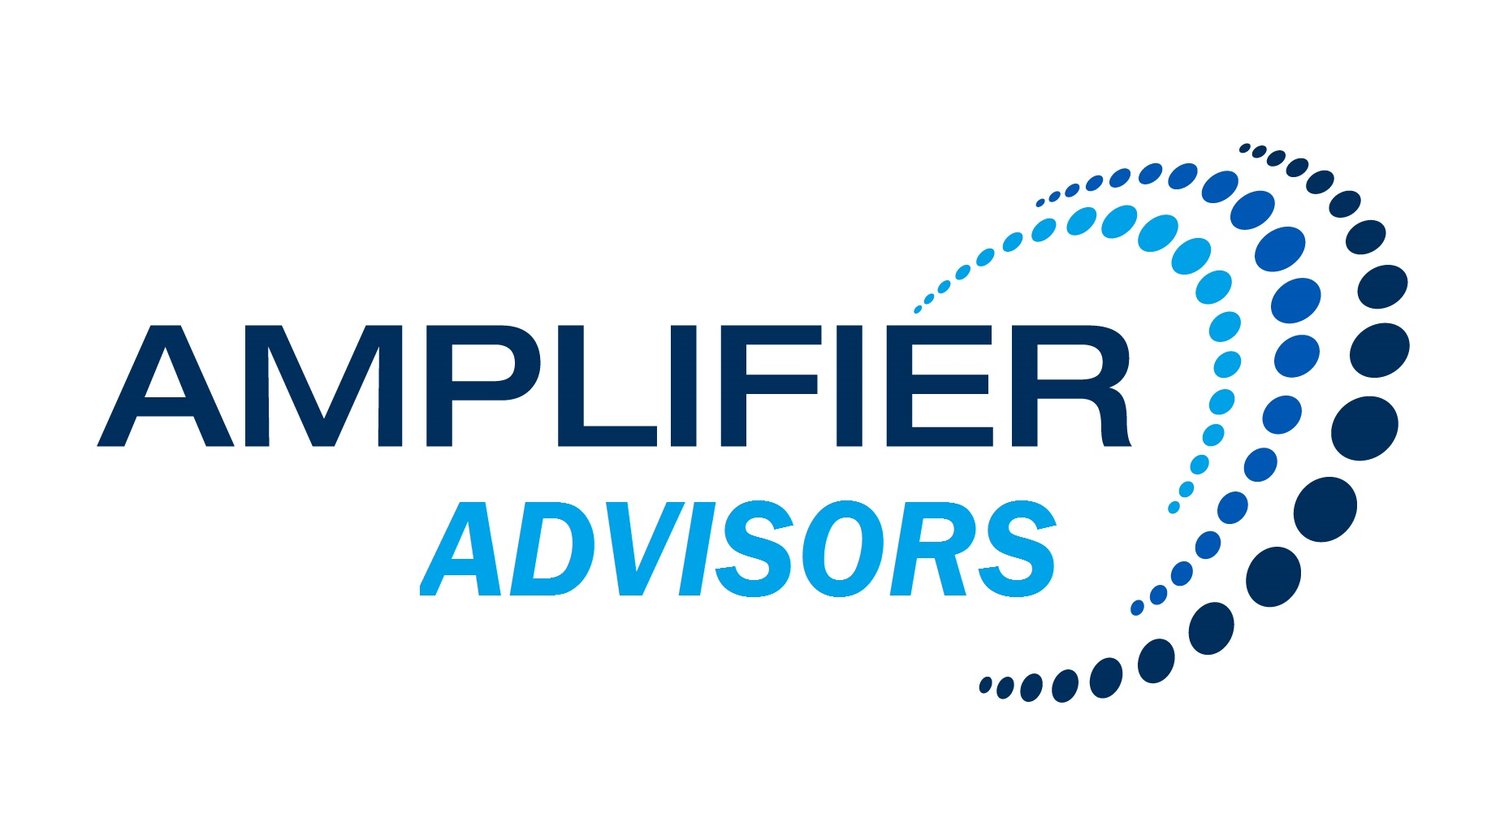 Amplifier Advisors